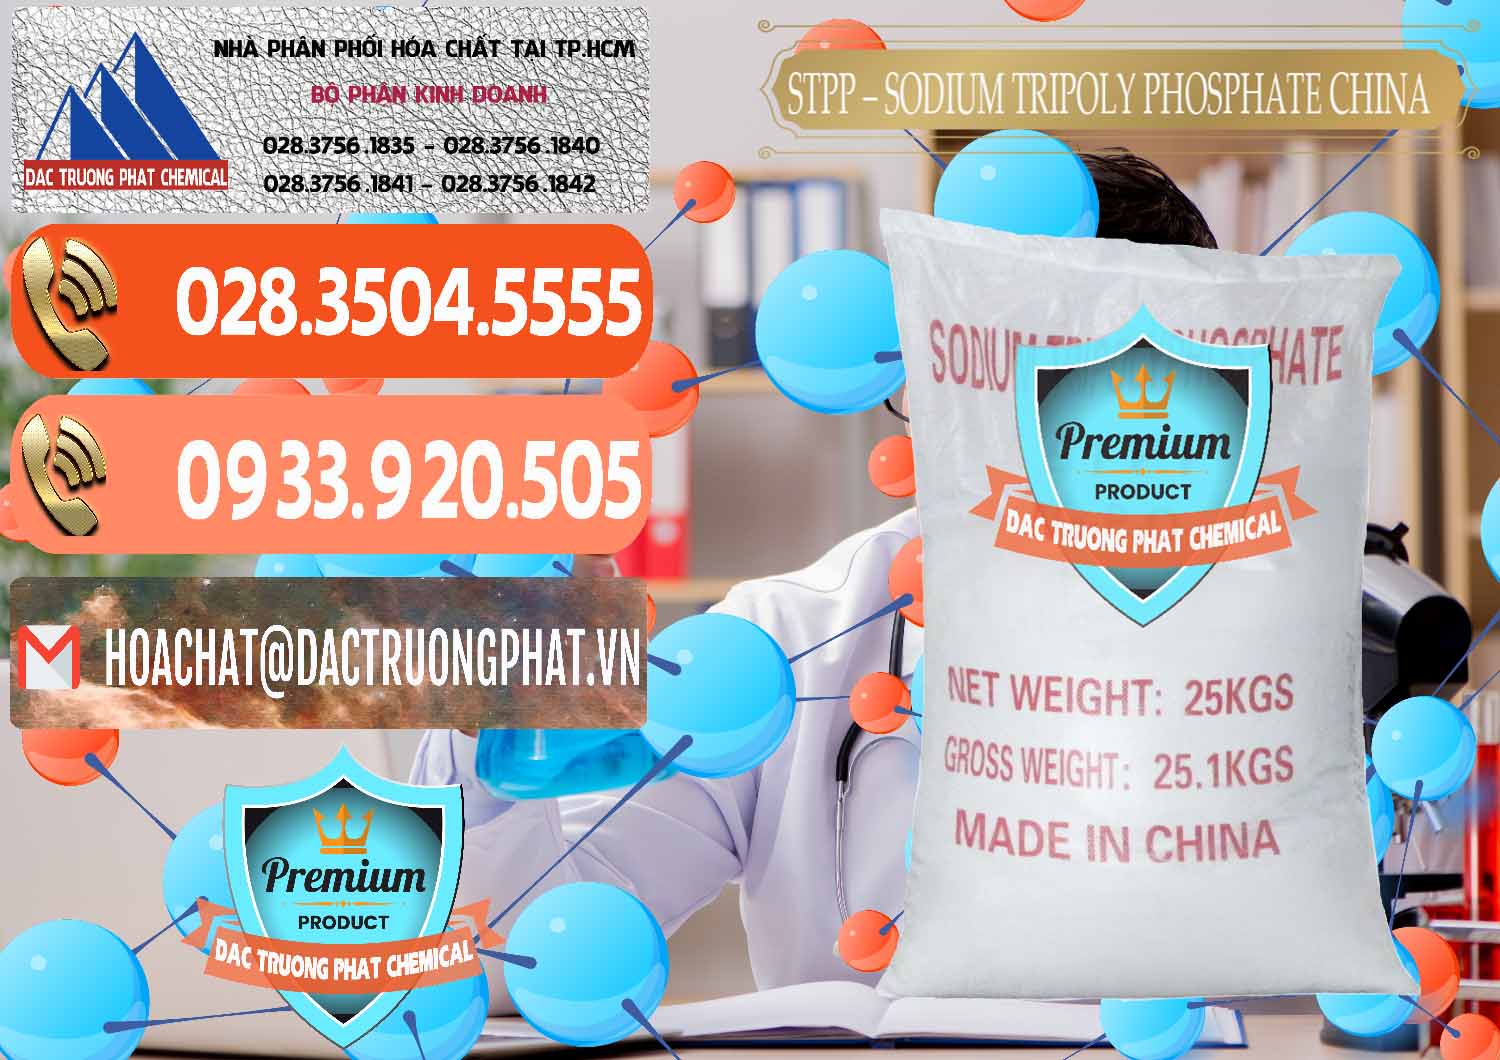 Cty phân phối và bán Sodium Tripoly Phosphate - STPP 96% Chữ Đỏ Trung Quốc China - 0155 - Nơi cung cấp _ phân phối hóa chất tại TP.HCM - hoachatmientay.com